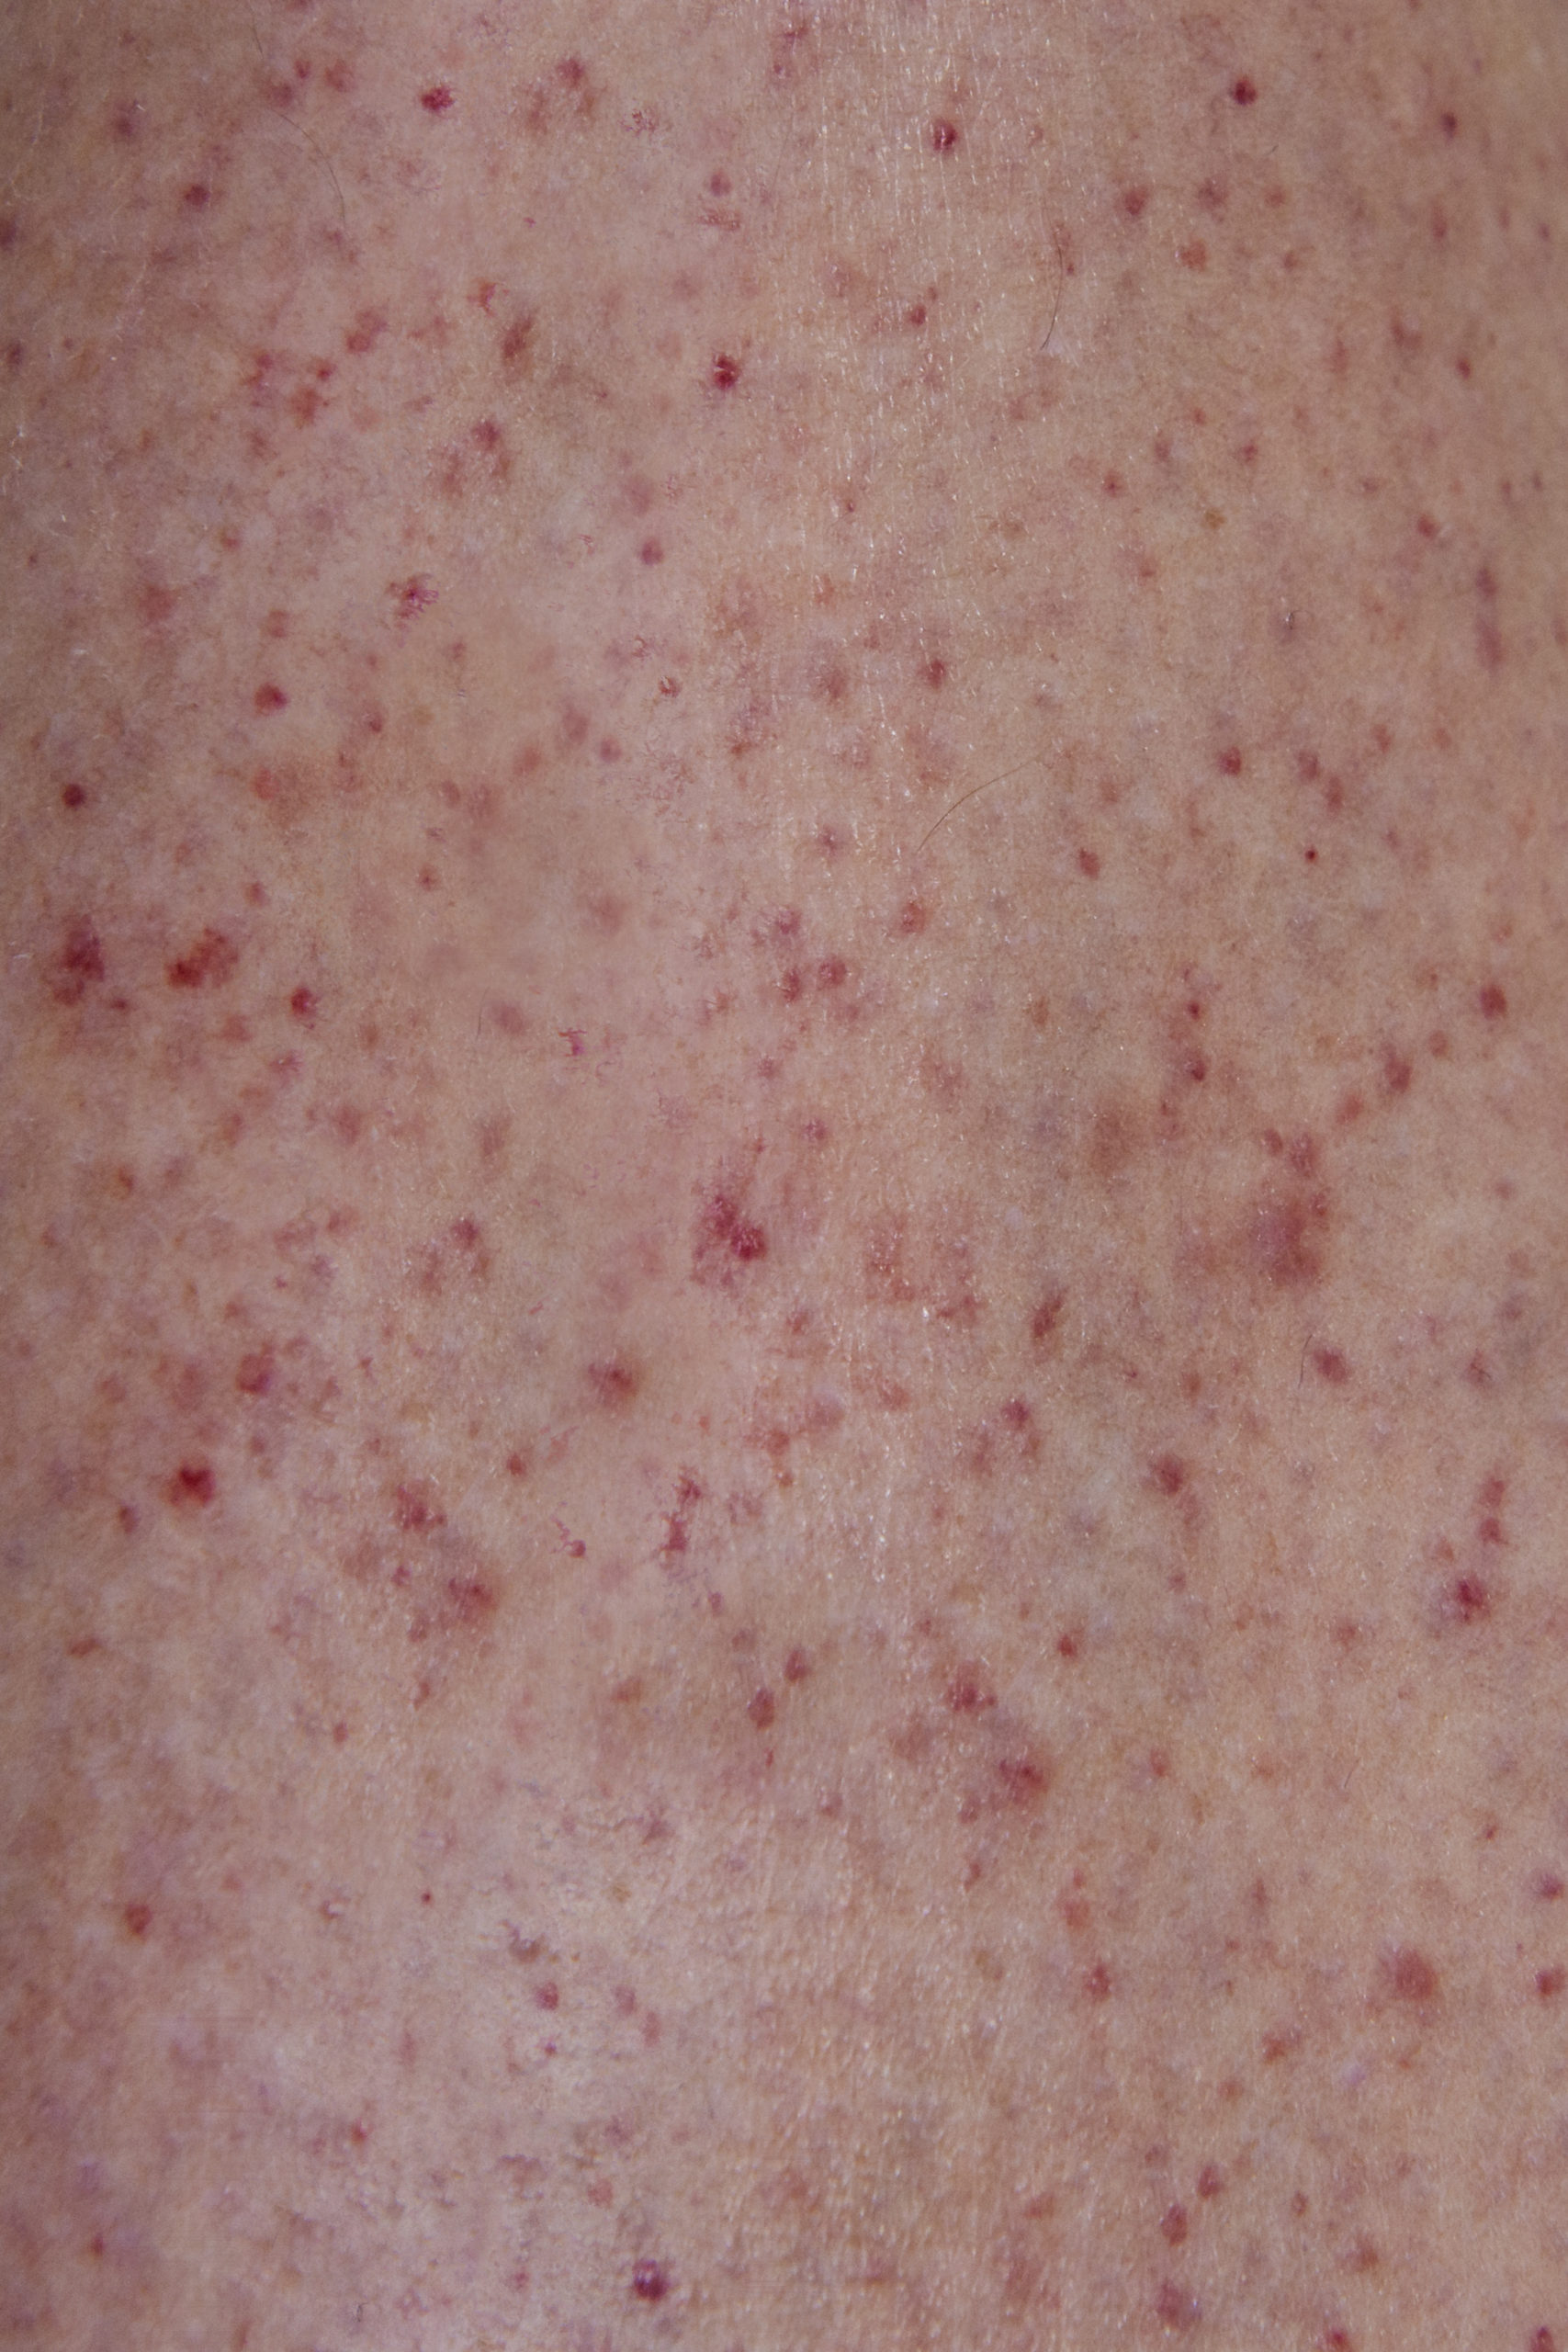 Close Up Image Of Meningitis Rash